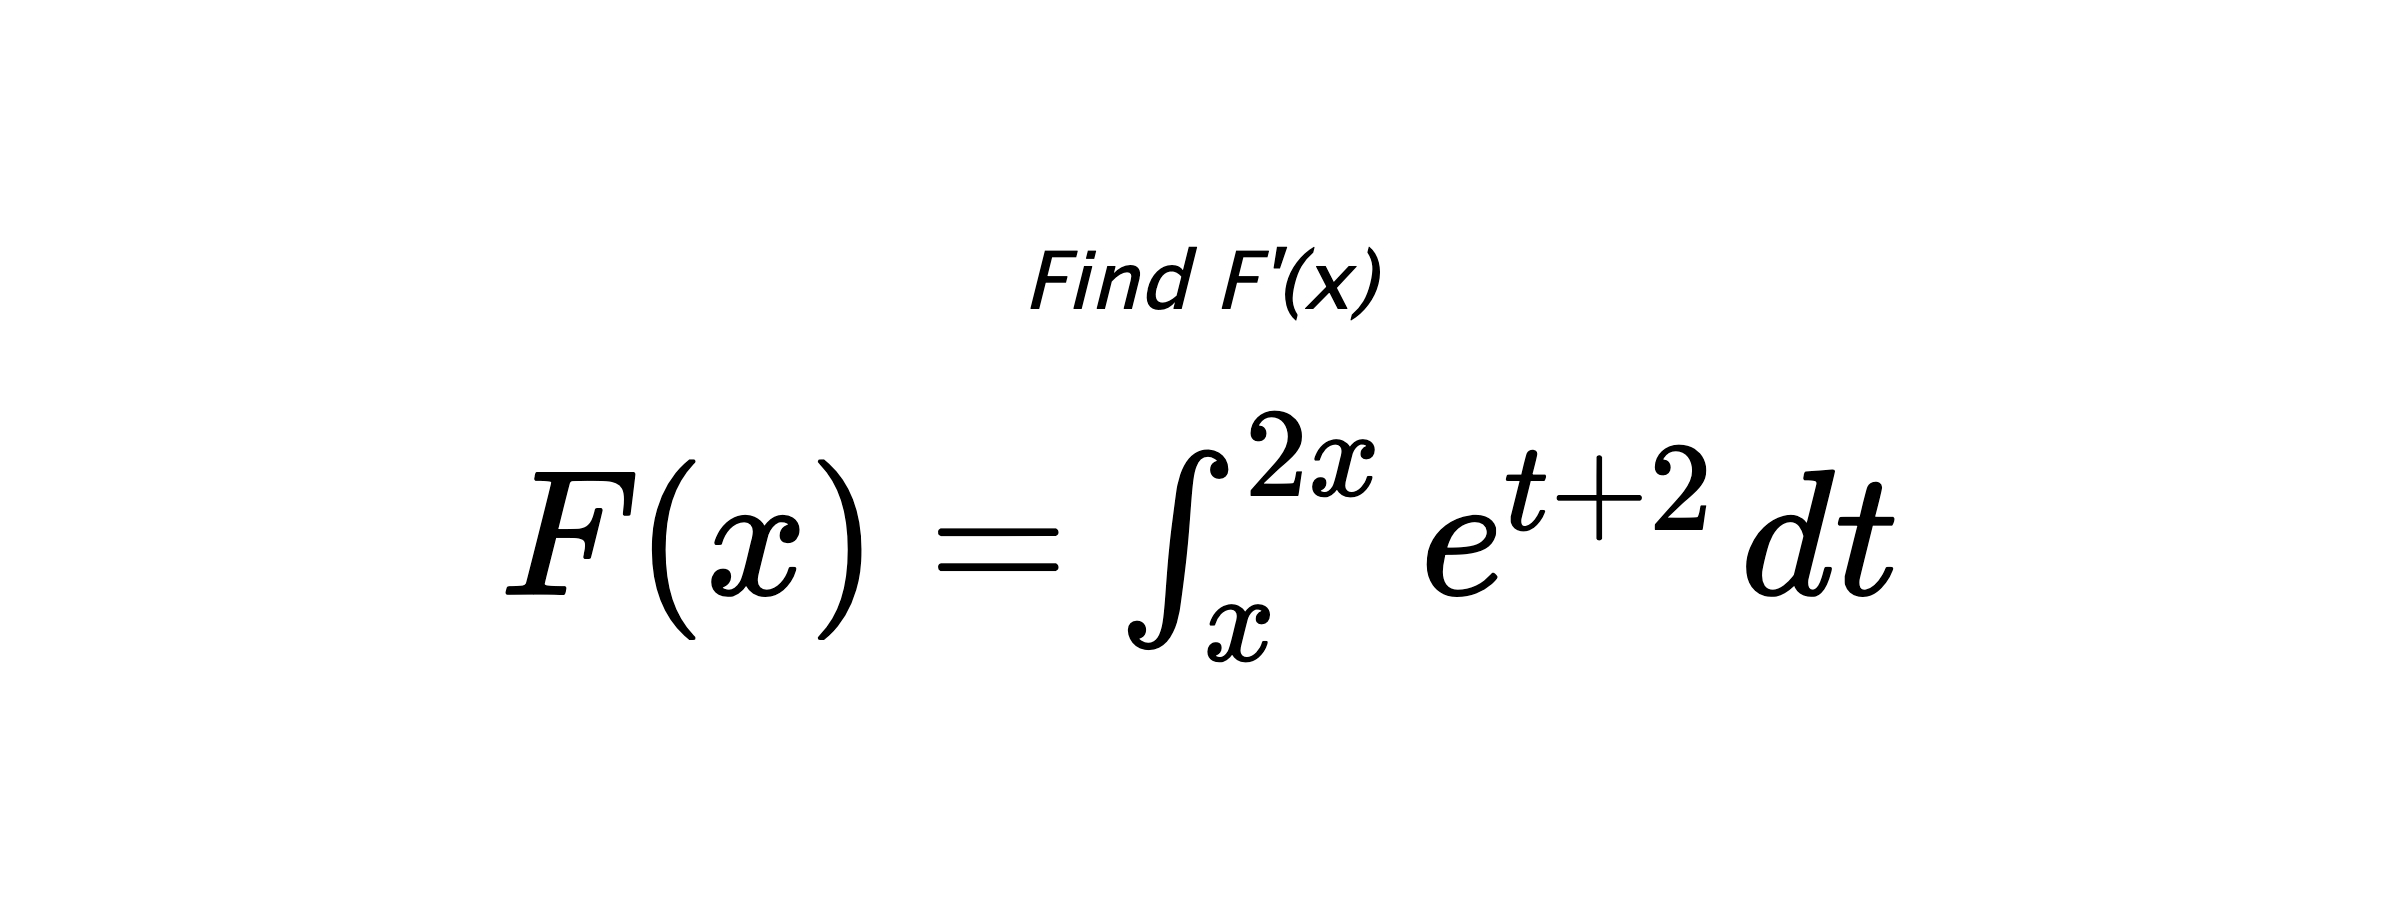 Find F'(x) $ F(x)=\int_{x}^{2x} e^{t+2} \hspace{0.2cm} dt $